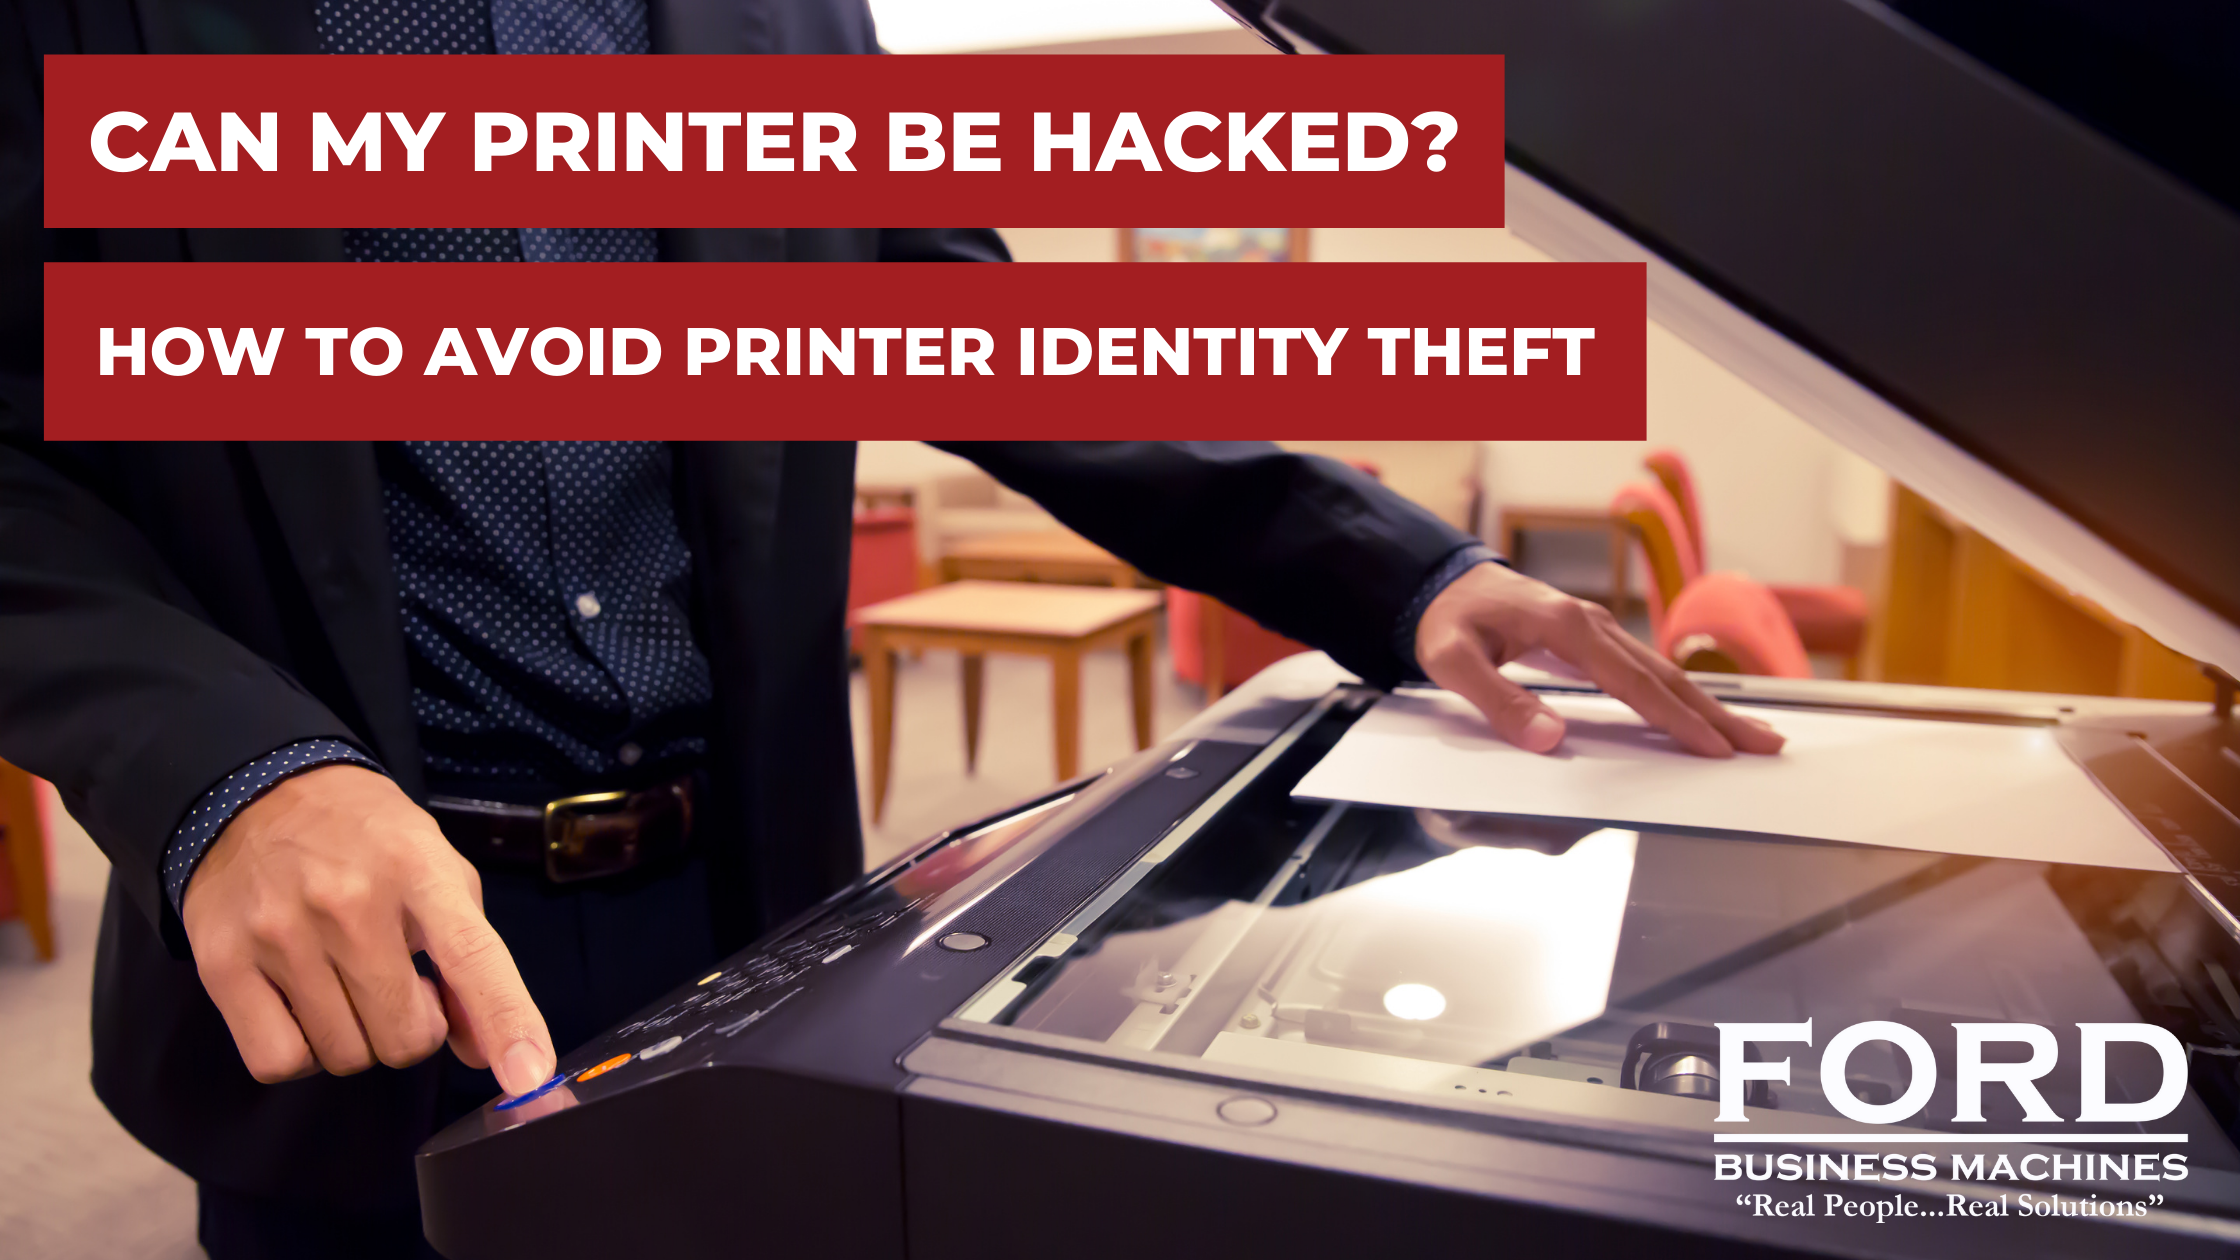 Avoid printer identity theft